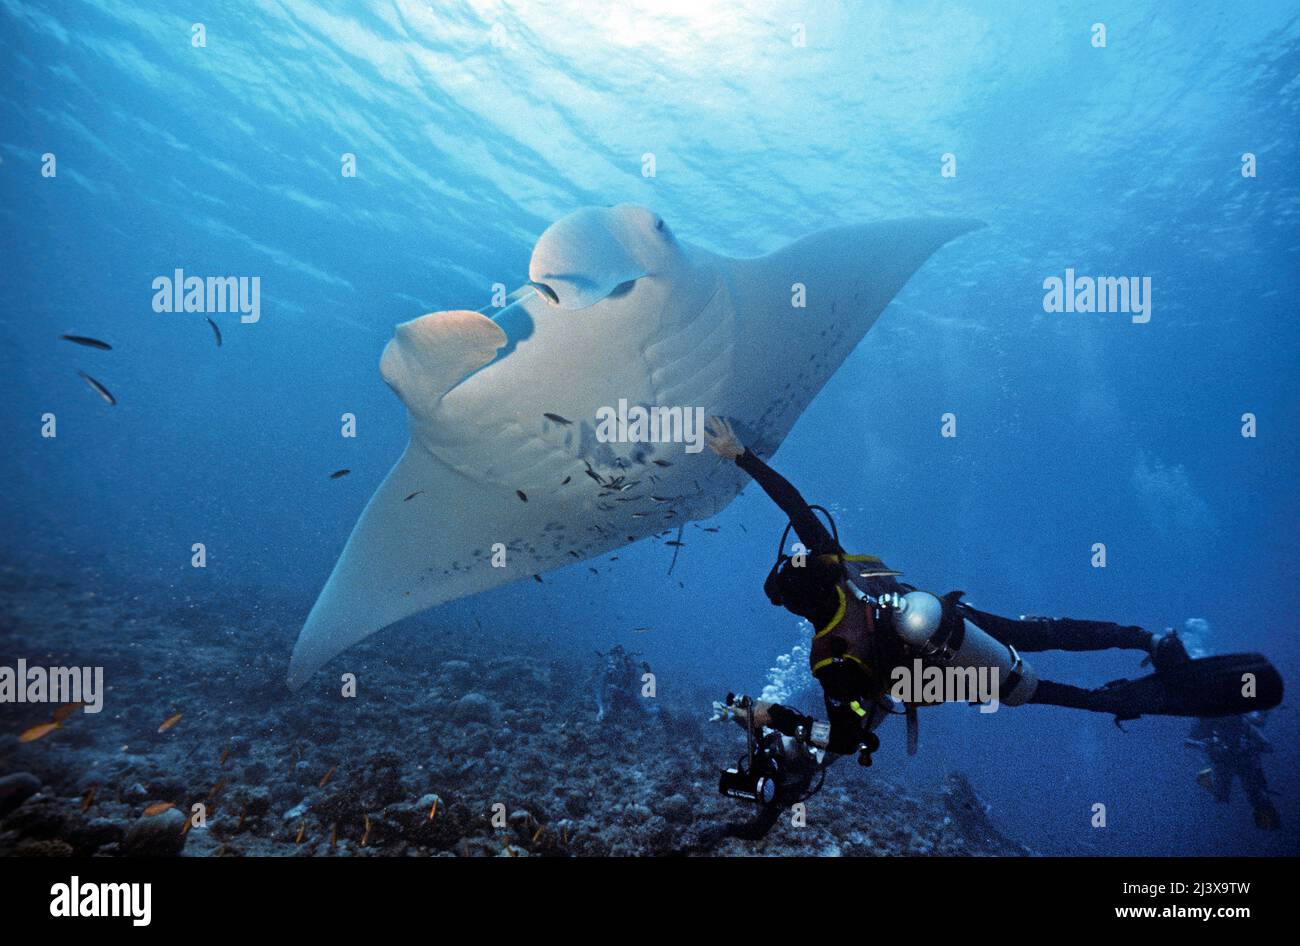 Plongeur touchant un rayon manta océanique géant ou un rayon manta géant (Manta birostris), Ari Atoll, Maldives, Océan Indien, Asie Banque D'Images